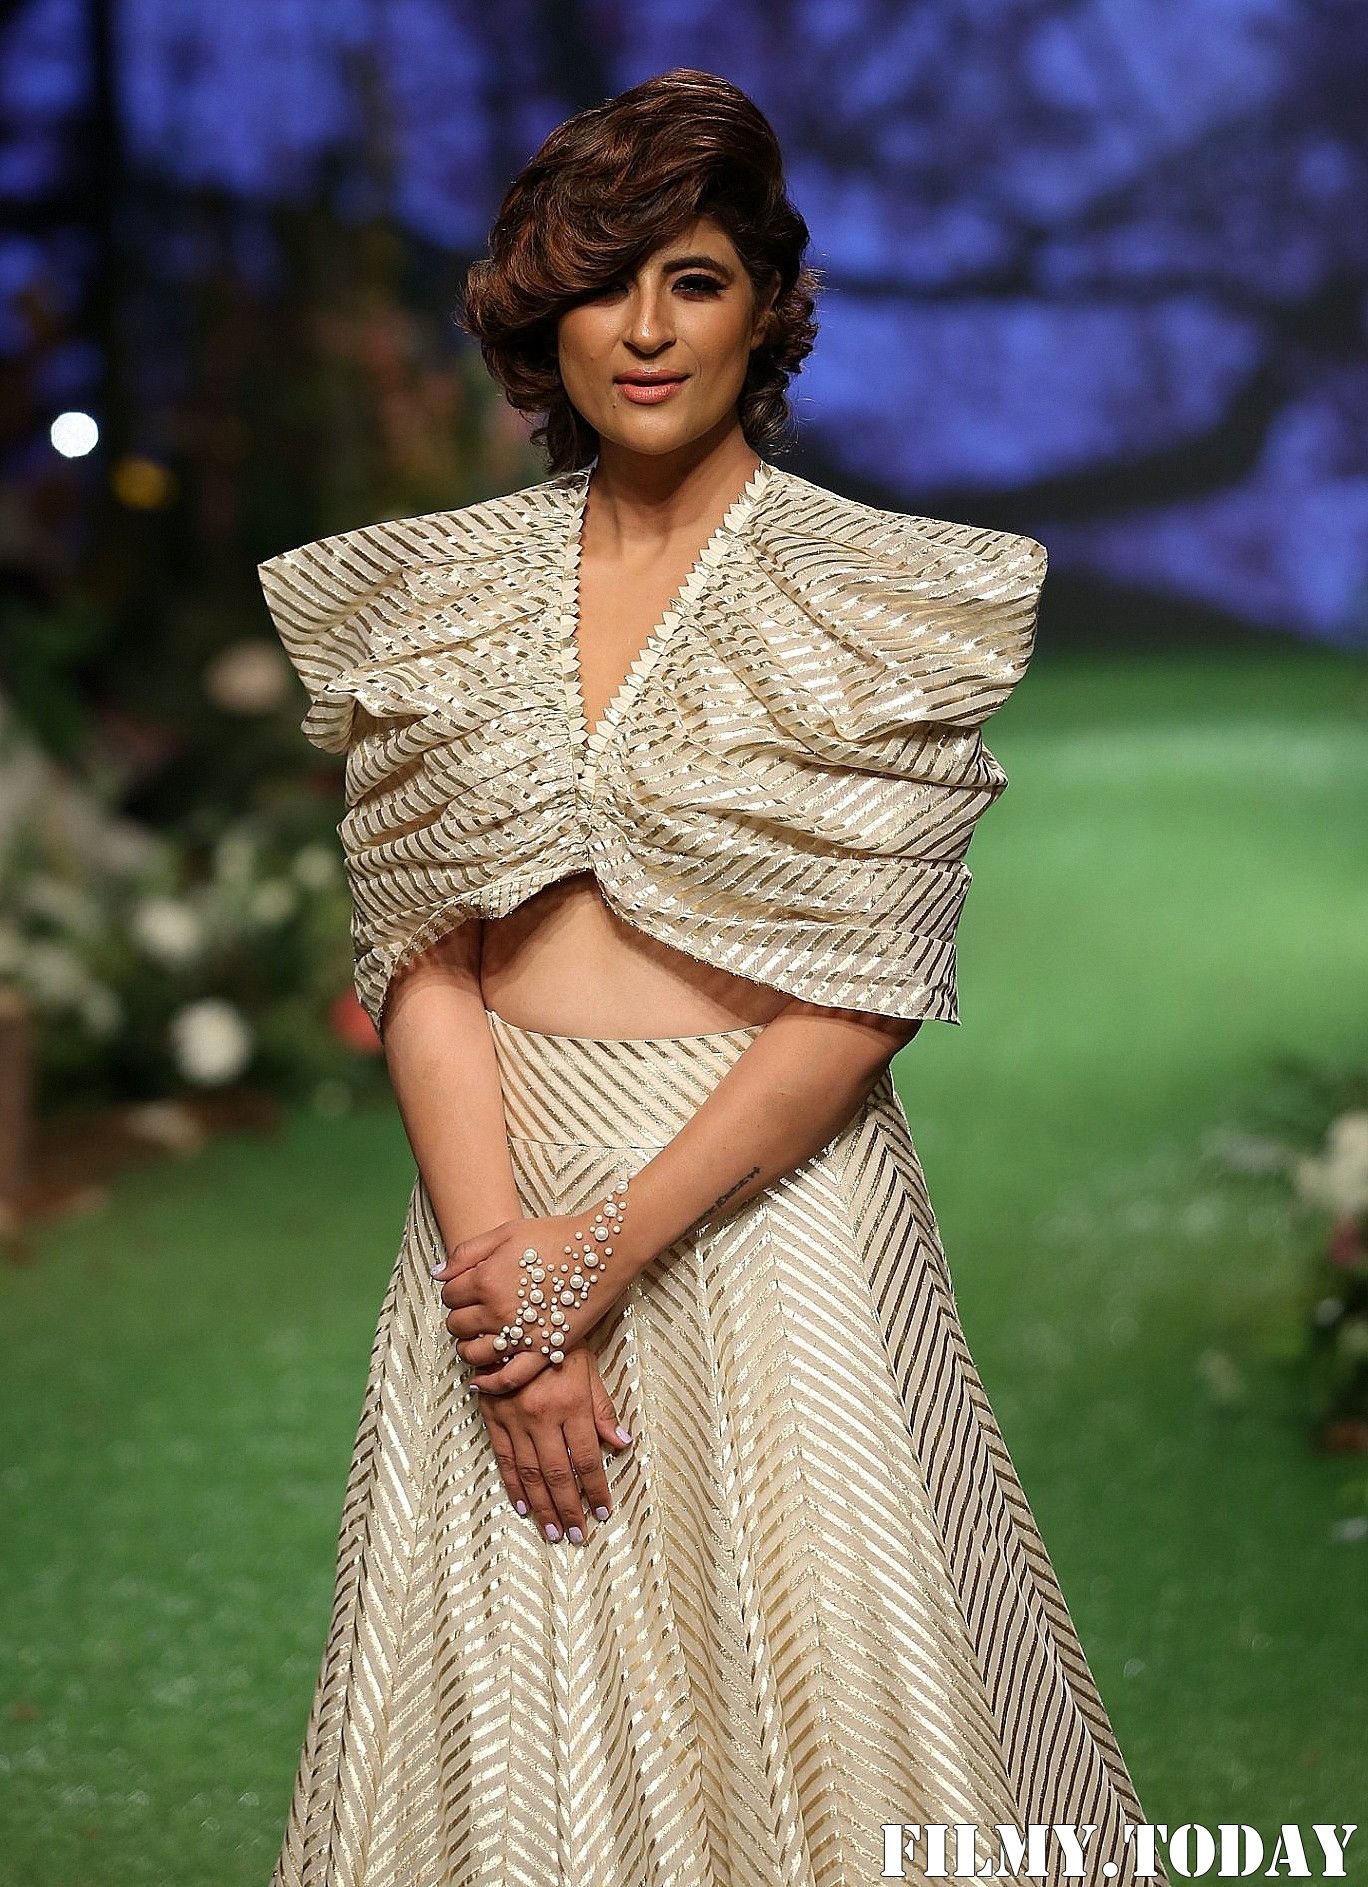 Photos: Tahira Kashyap Walks Ramp At Lakme Fashion Week 2020 | Picture 1721770